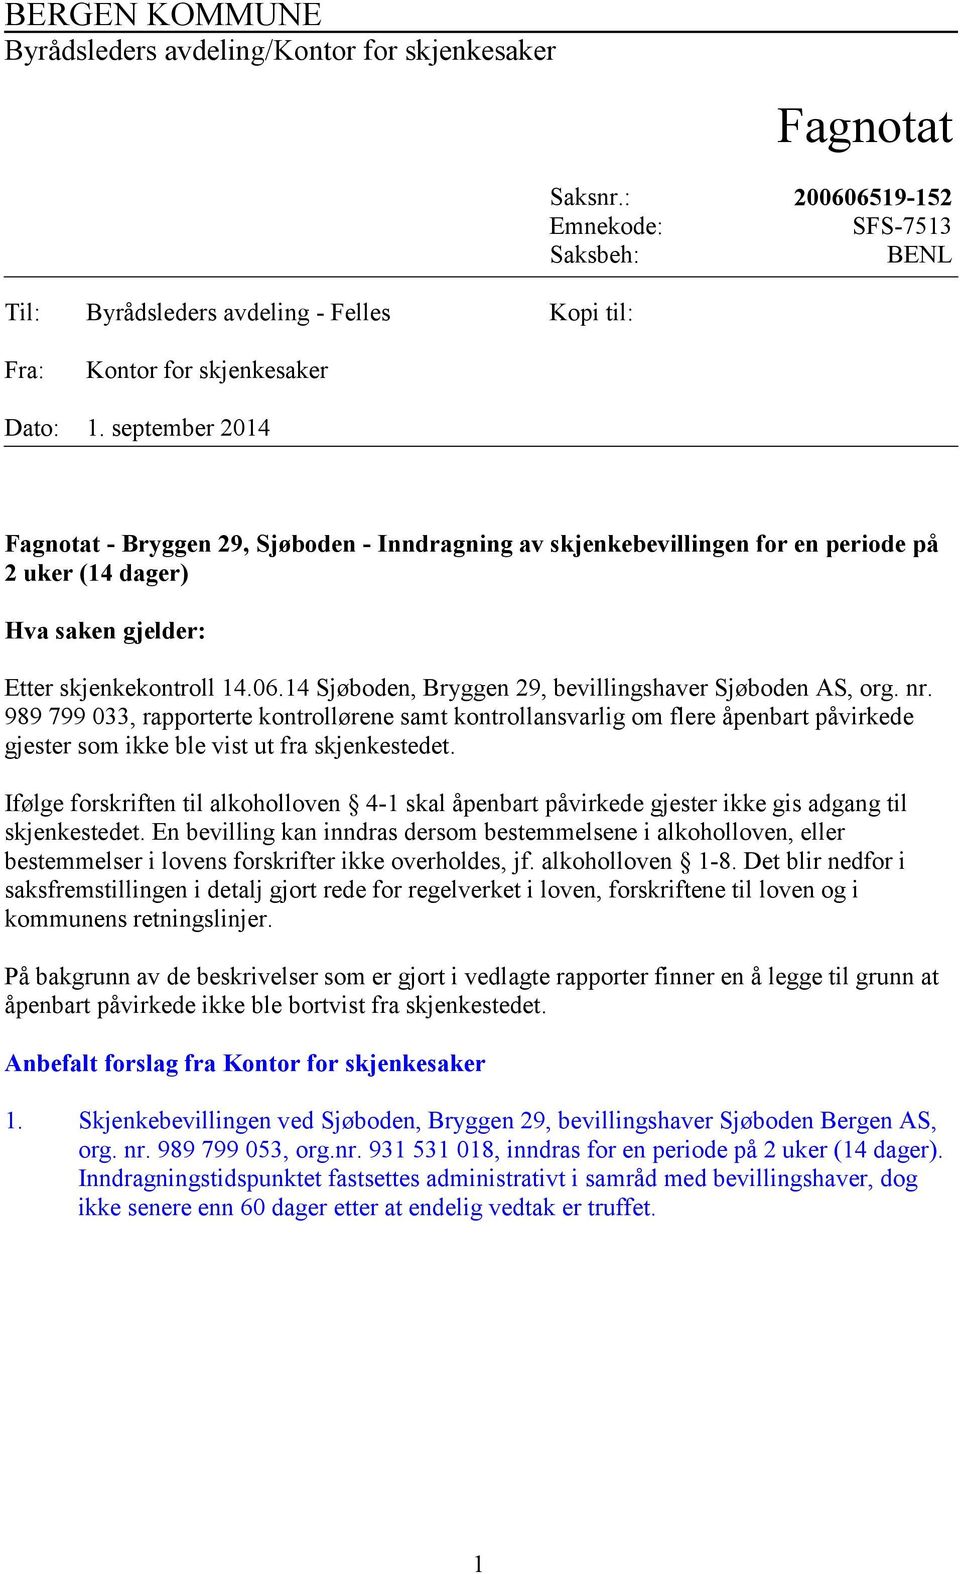 september 2014 Fagnotat - Bryggen 29, Sjøboden - Inndragning av skjenkebevillingen for en periode på 2 uker (14 dager) Hva saken gjelder: Etter skjenkekontroll 14.06.